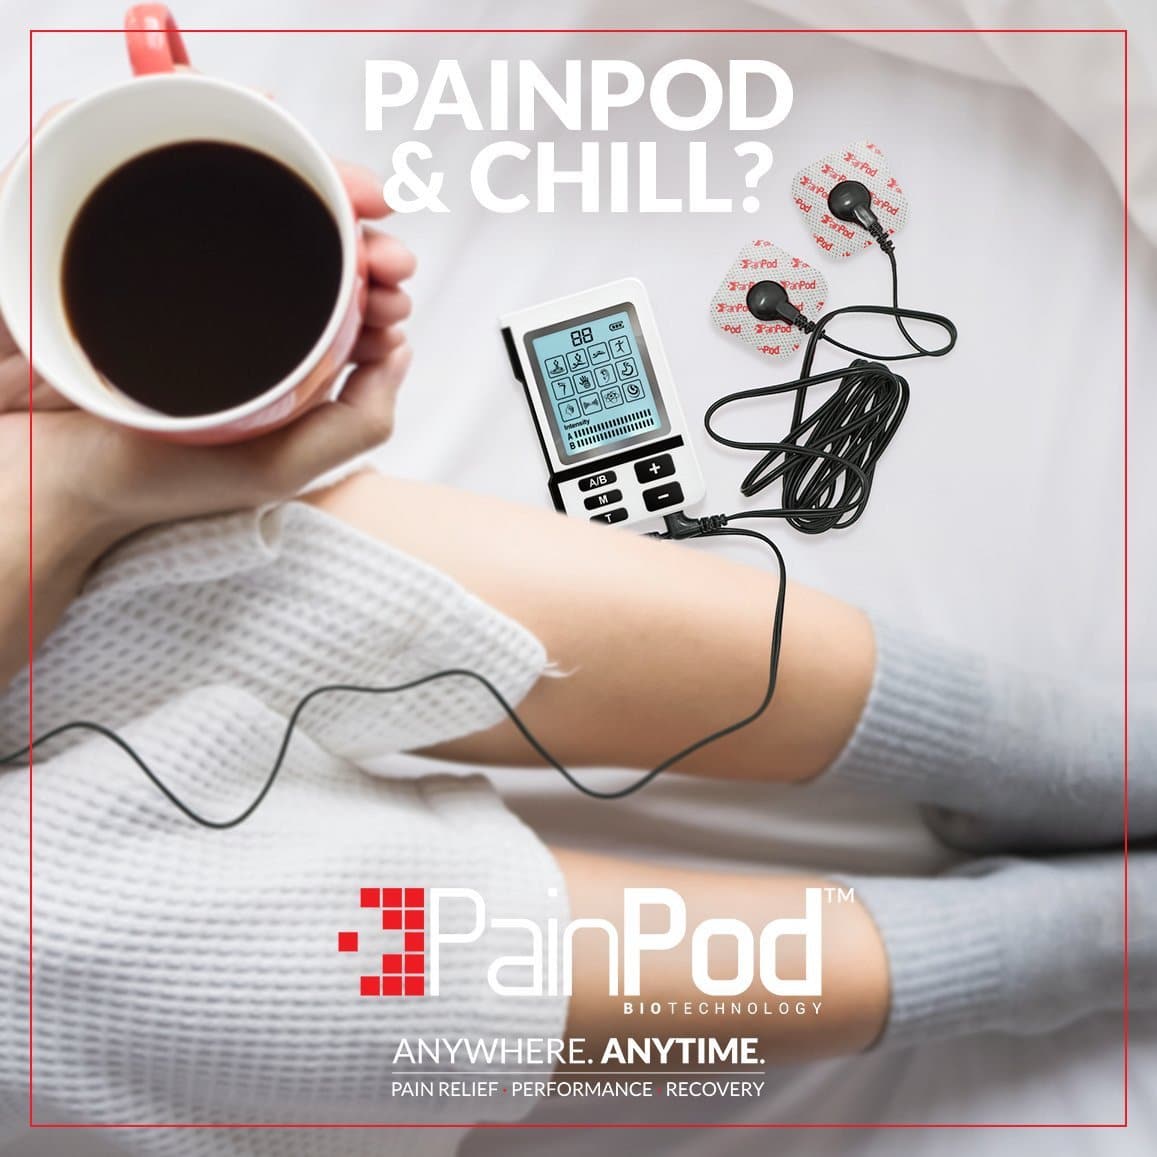 PainPod™-3 add, painpod and chill